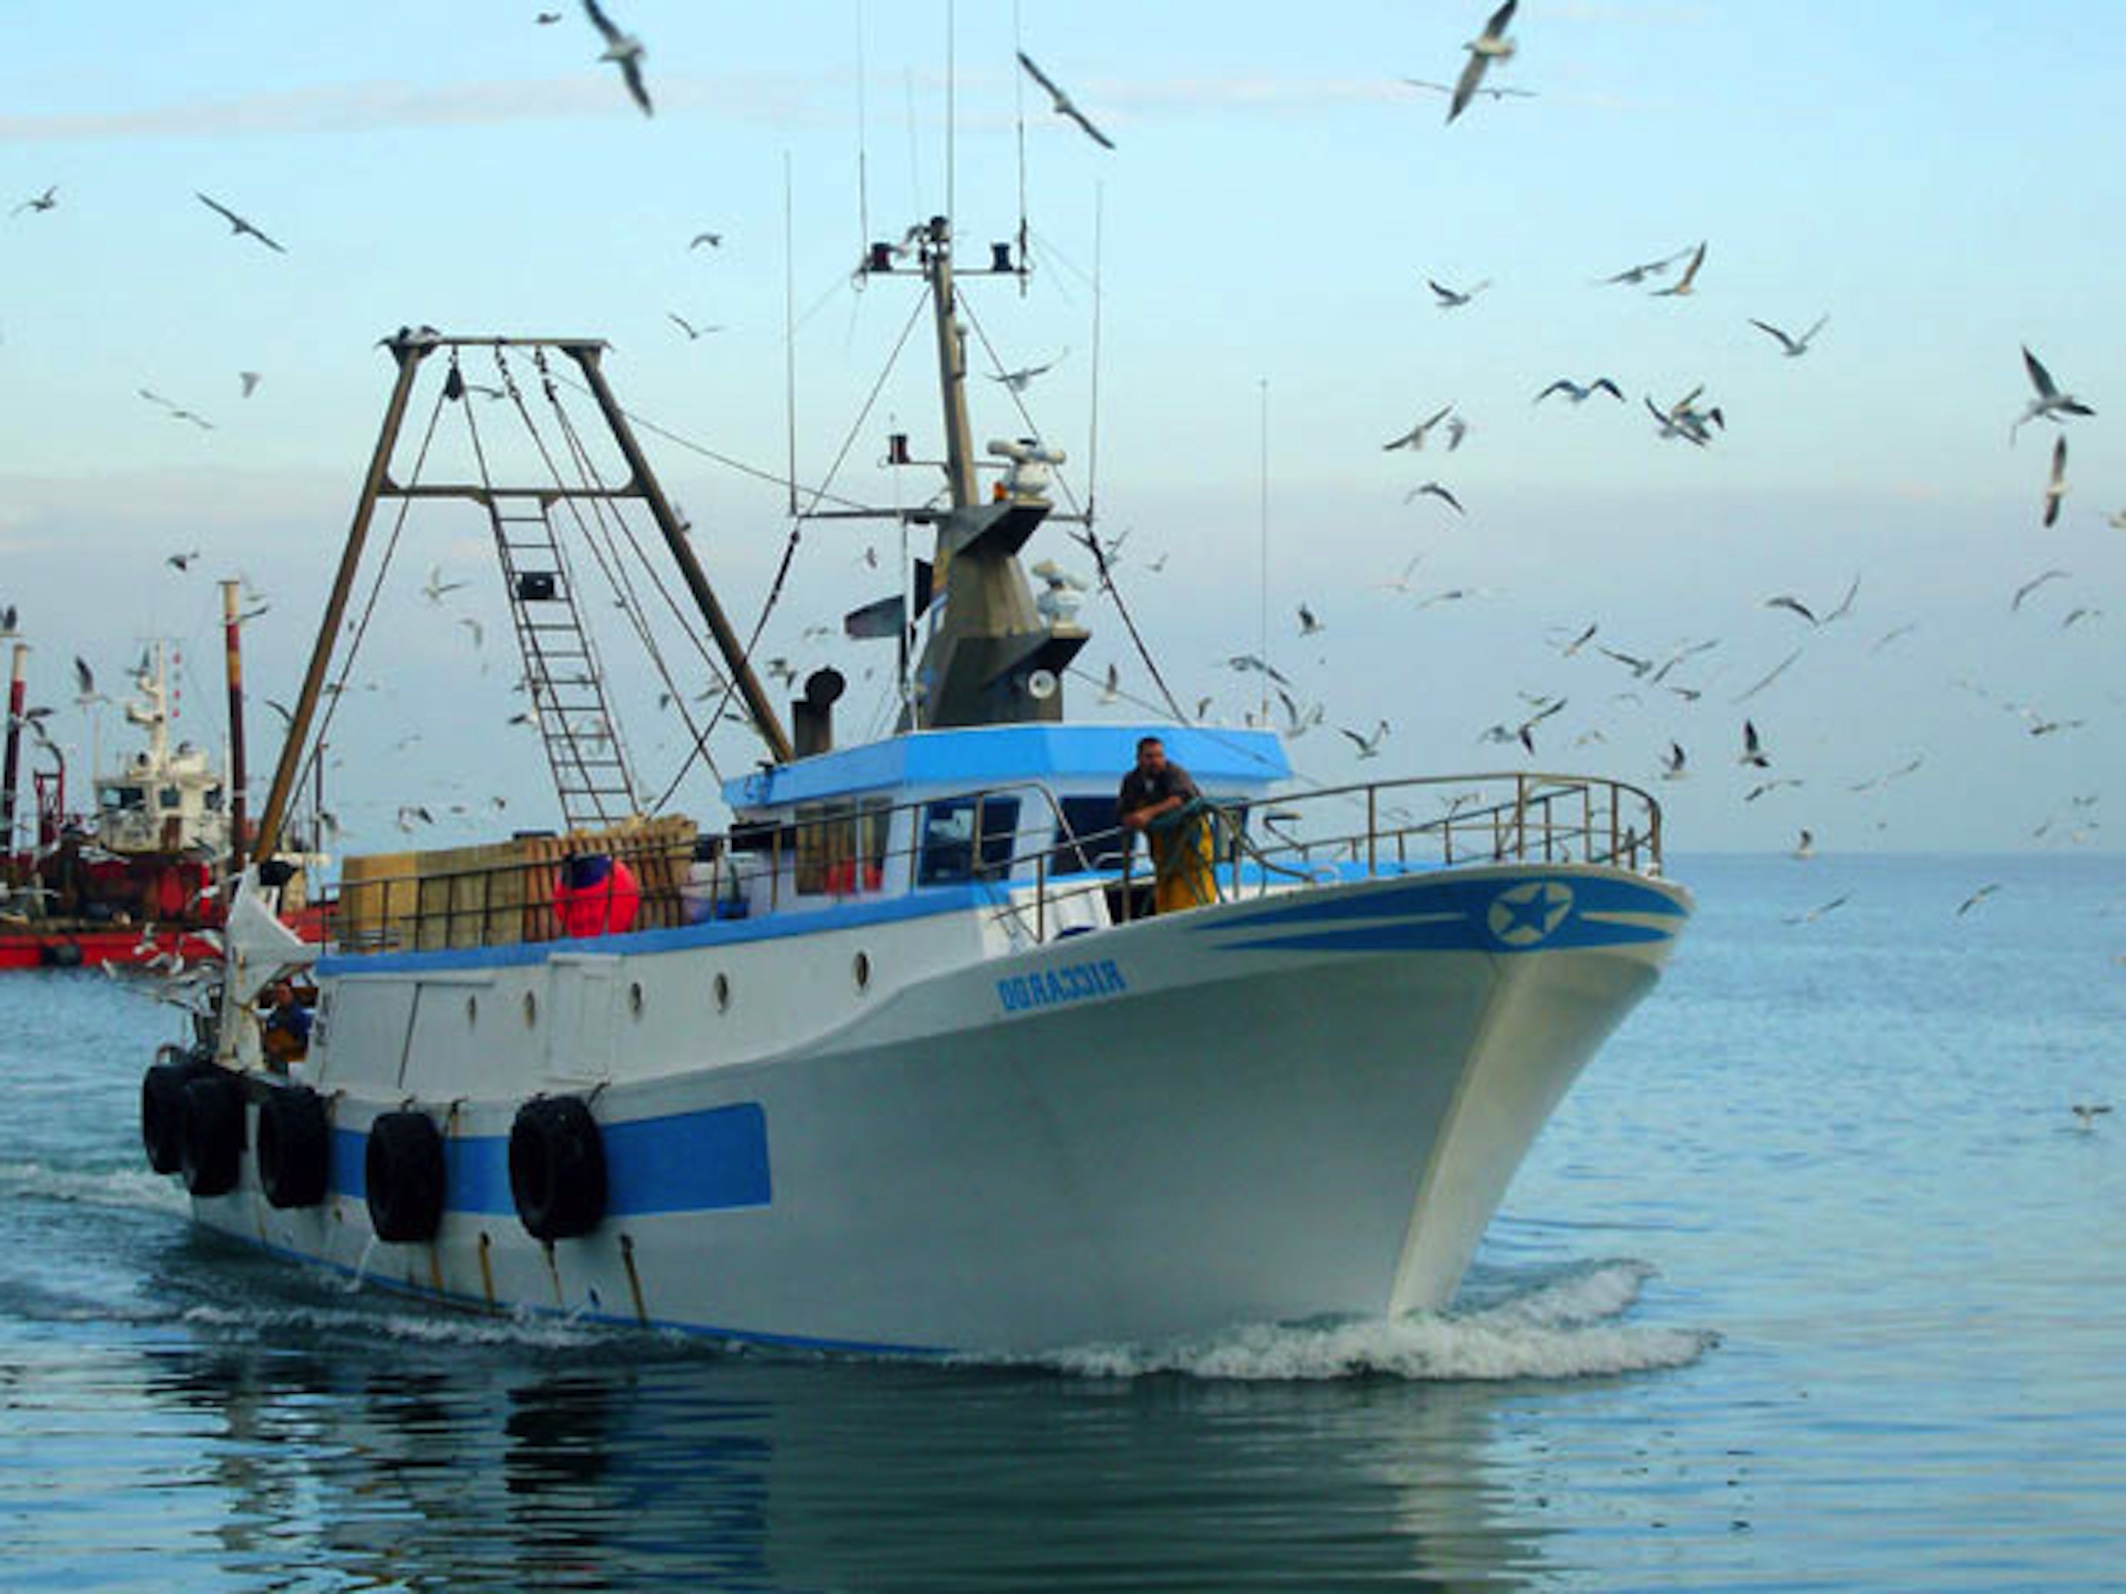  “Blue Day”, 1 miliardo di euro di fondi per la pesca italiana fino al 2020